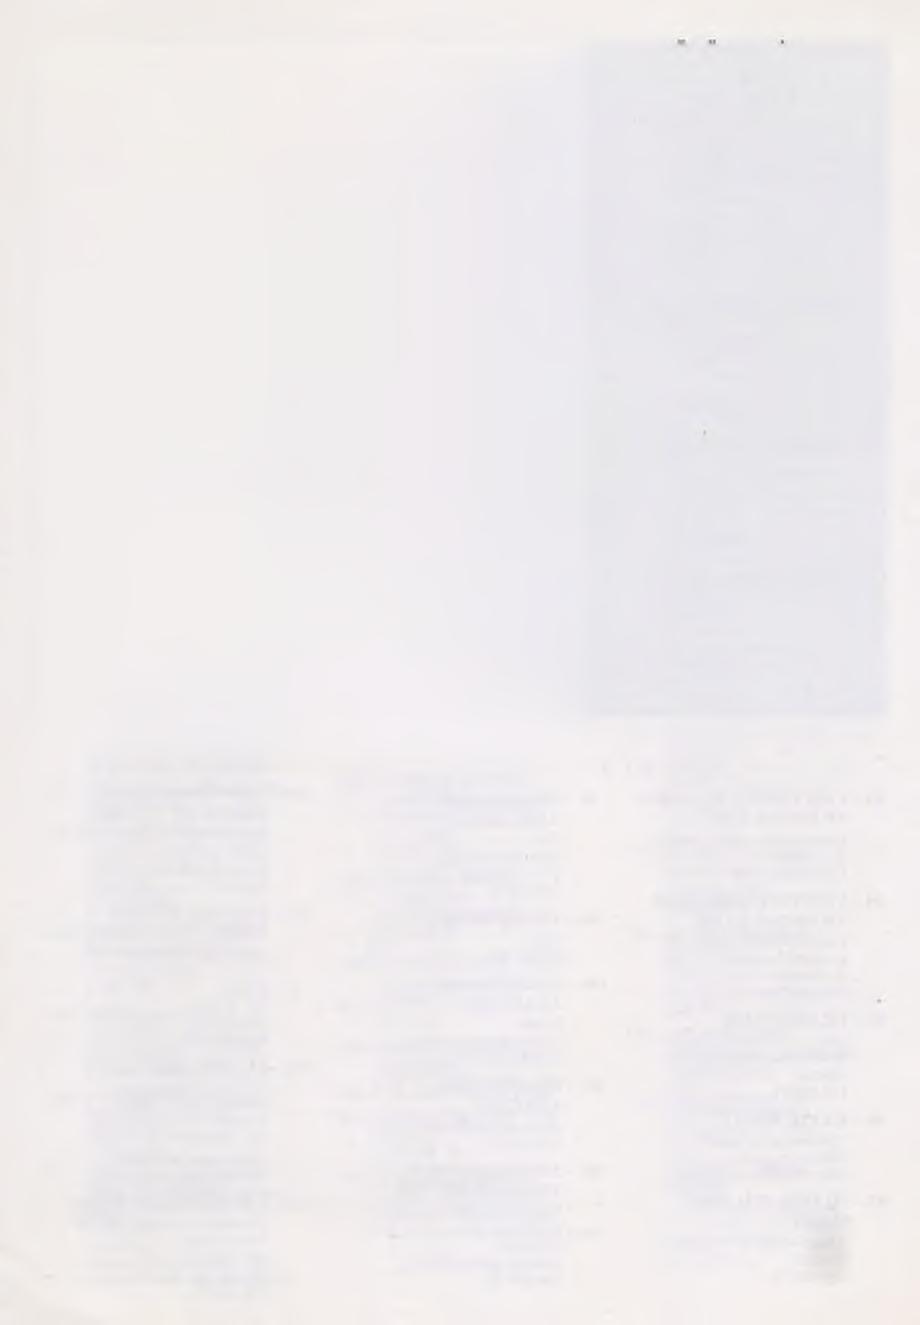 74 - SİVAS CEZAEVİ YÜN HALI Buhara modeli. Özel Dokuma 485 tezgâh No lu 320 x240 cm. 3.000.000 TL 75 - KANTON PORSELEN DUVAR TABAĞI İnsan figürleri resmedilmiş. 19.- 20.